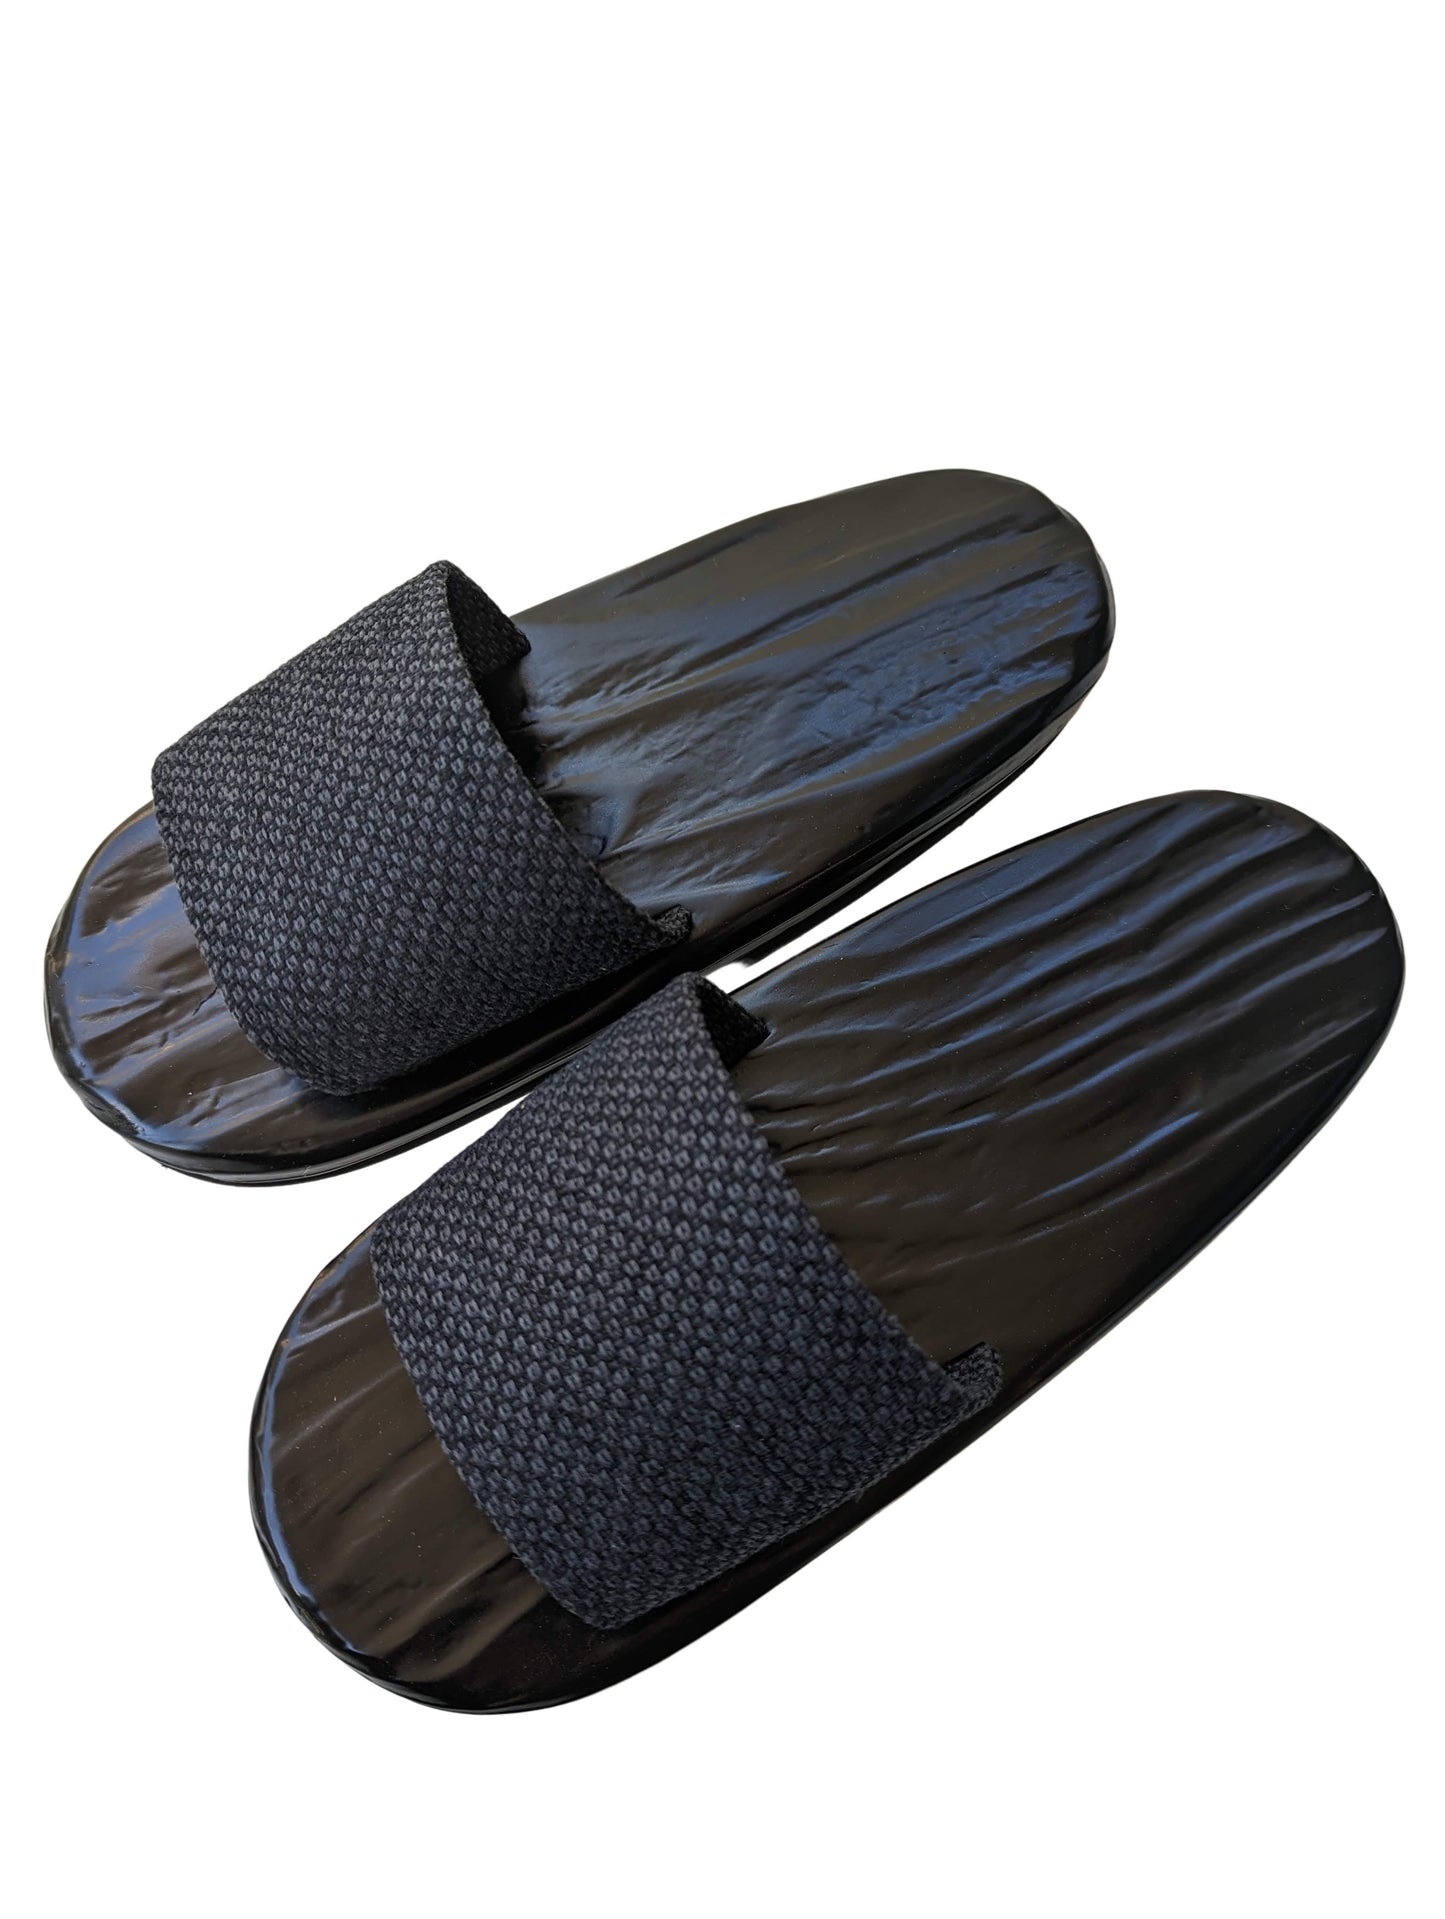 Black Wood painted GETA Slippers [Outdoor / Indoor]